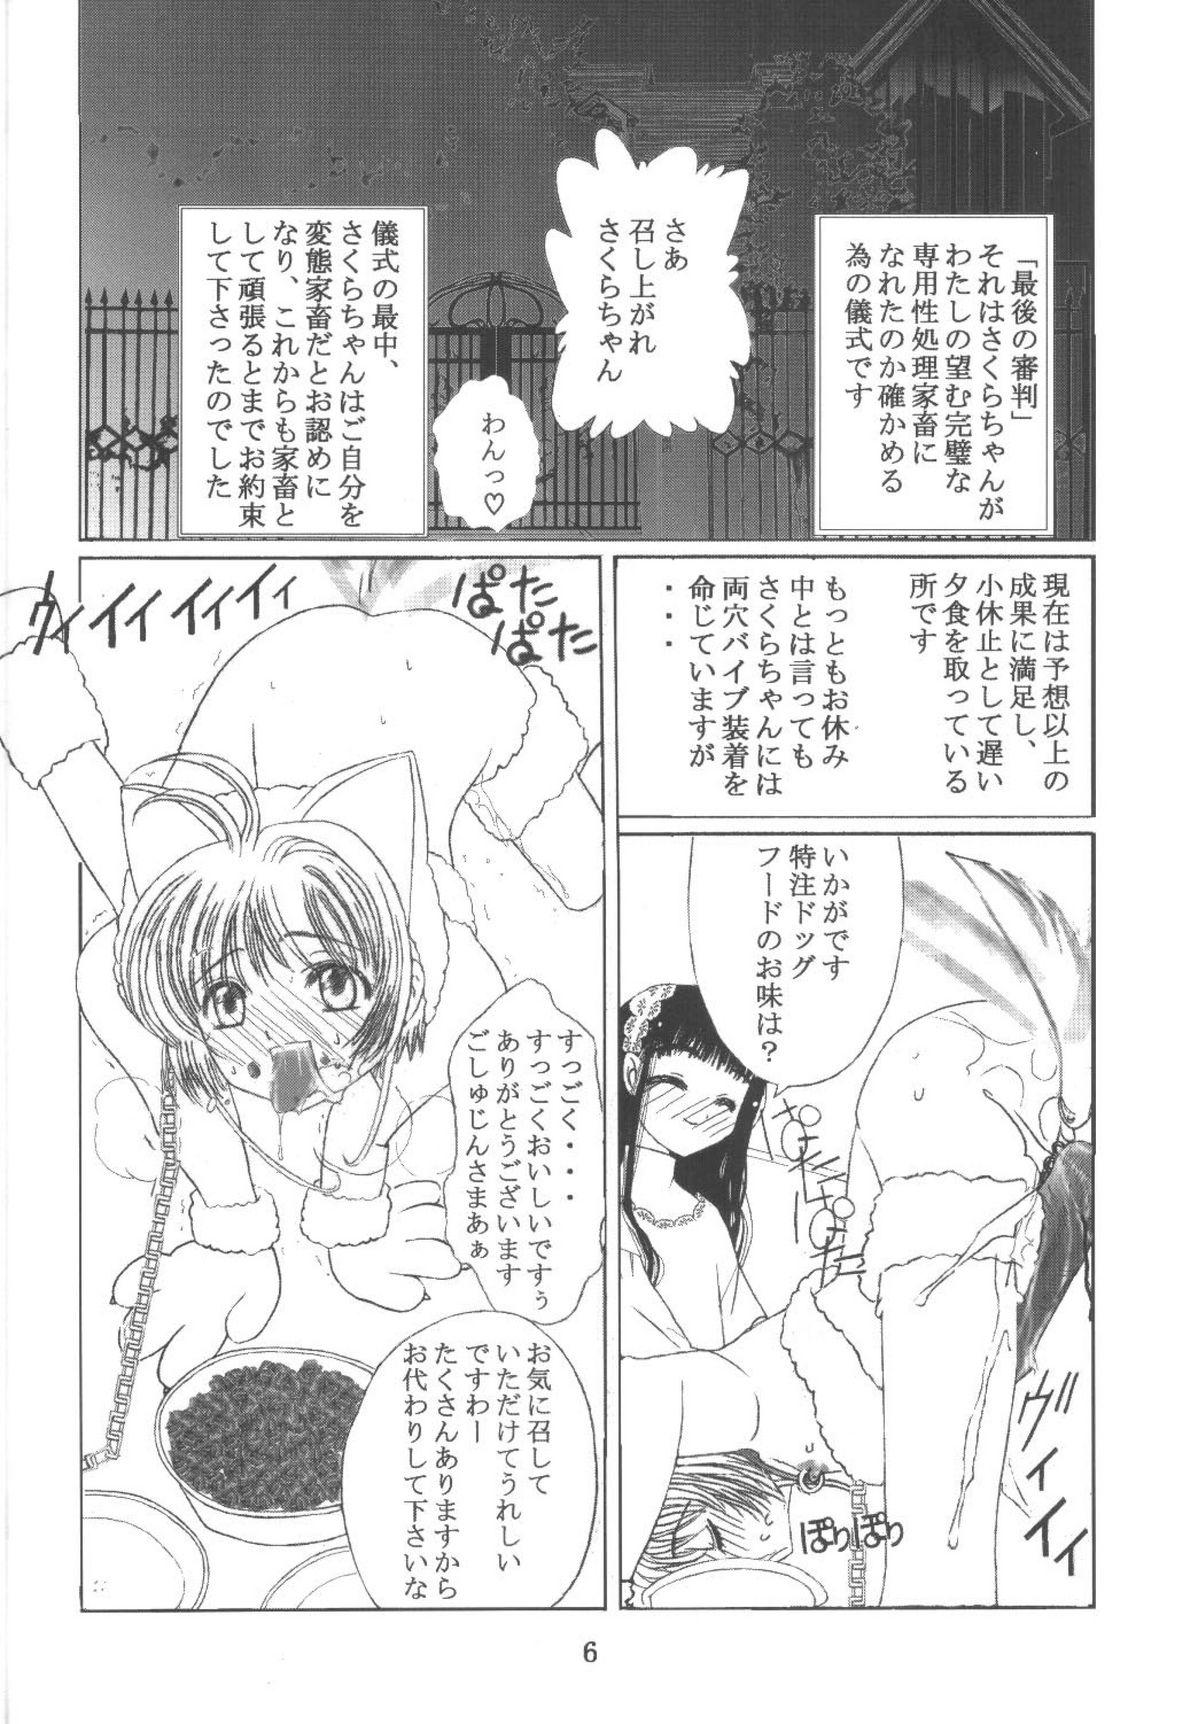 Missionary Position Porn Kuuronziyou 11 Sakura-chan de Asobou 6 - Cardcaptor sakura Bailando - Page 6